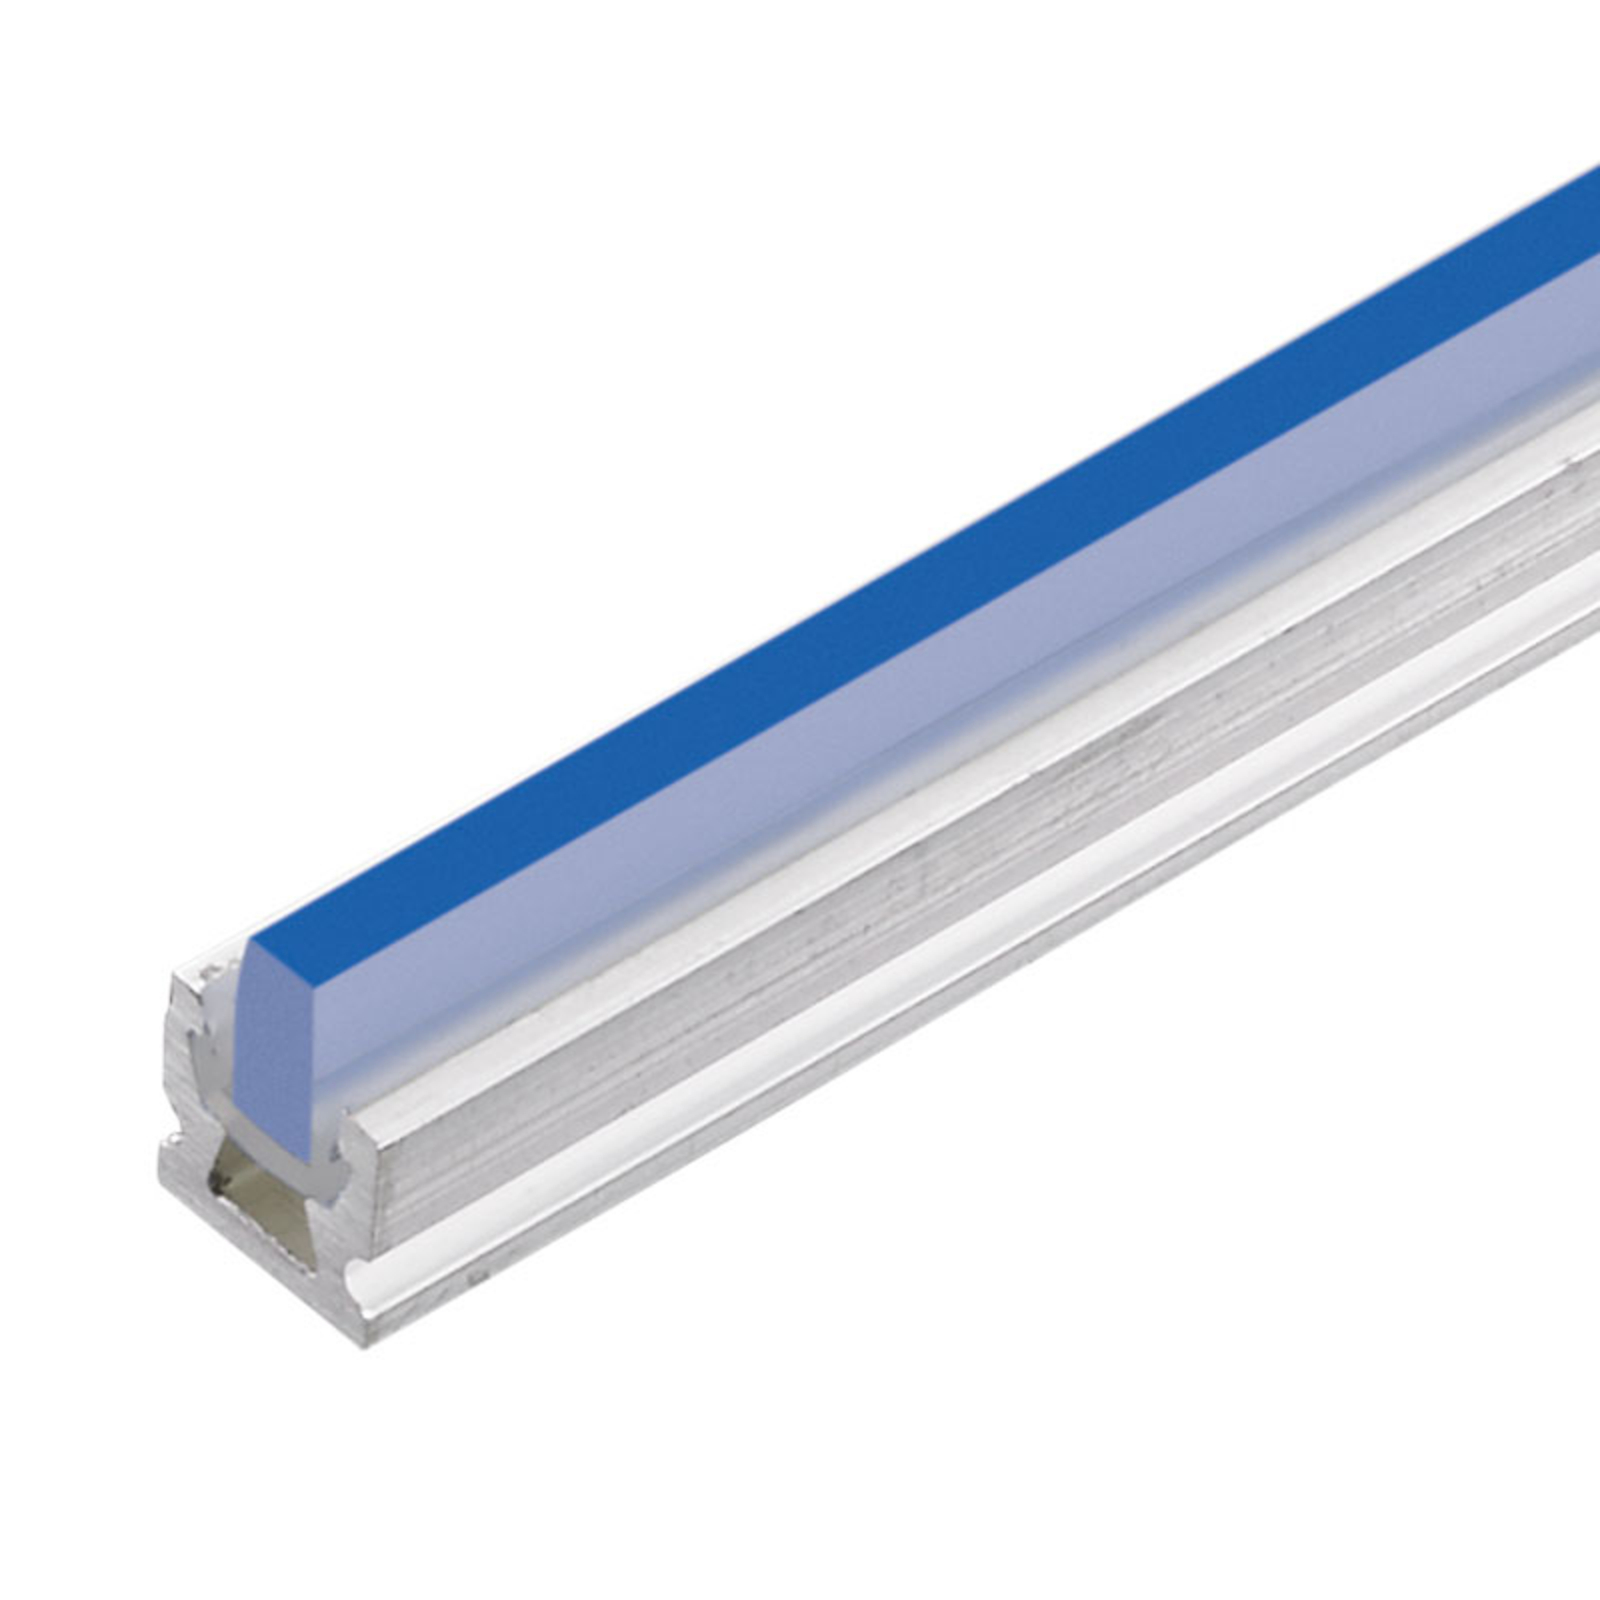 dot-spot LED lichtlijn set sl 3,5, blauw, 30 cm